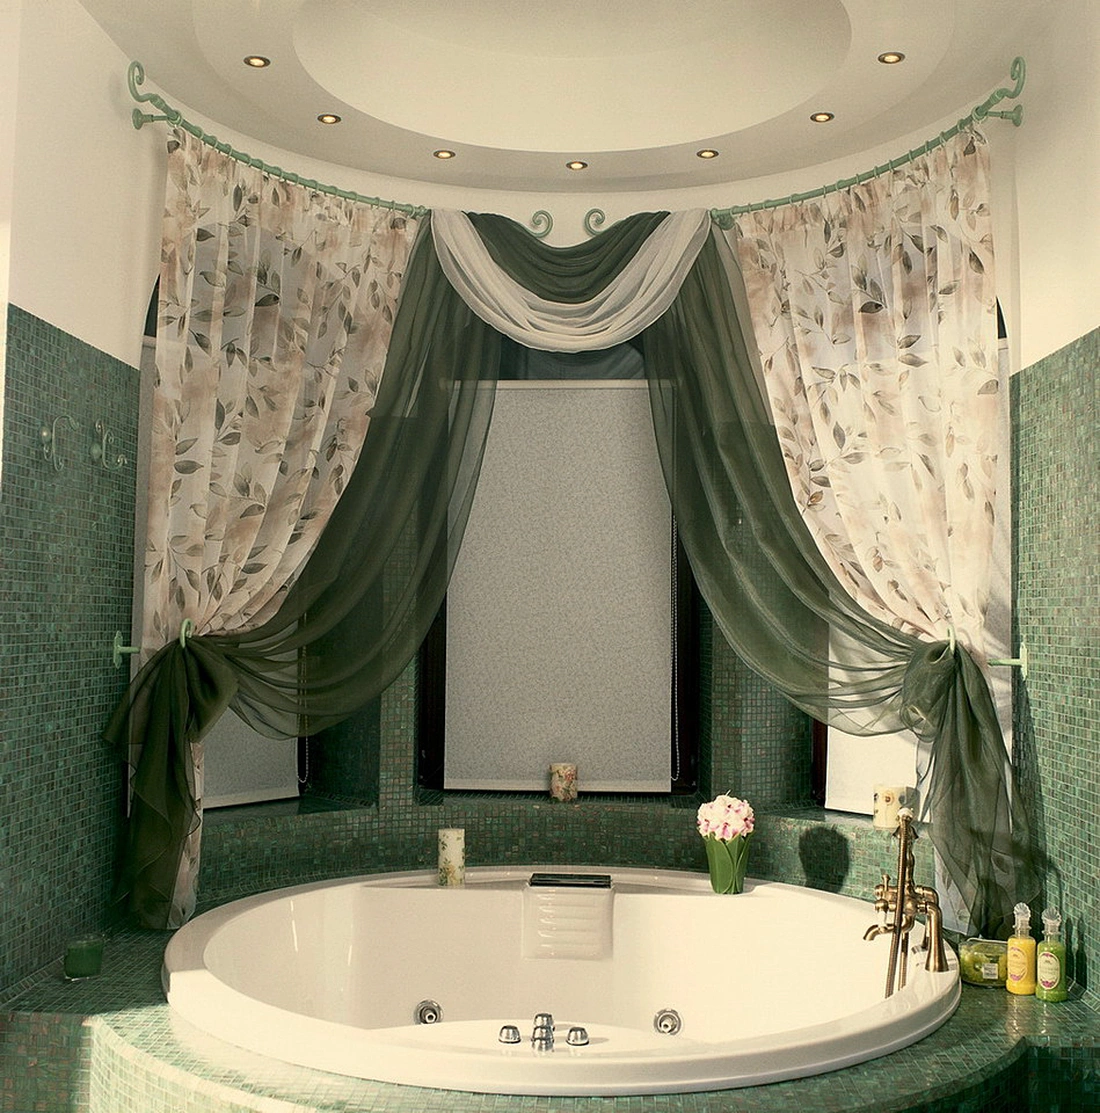 Оформление ванной текстилем поможет смягчит интерьер. Используя разные виды штор, можно дополнить дизайн ванной комнаты и сделать ее комфортнее.